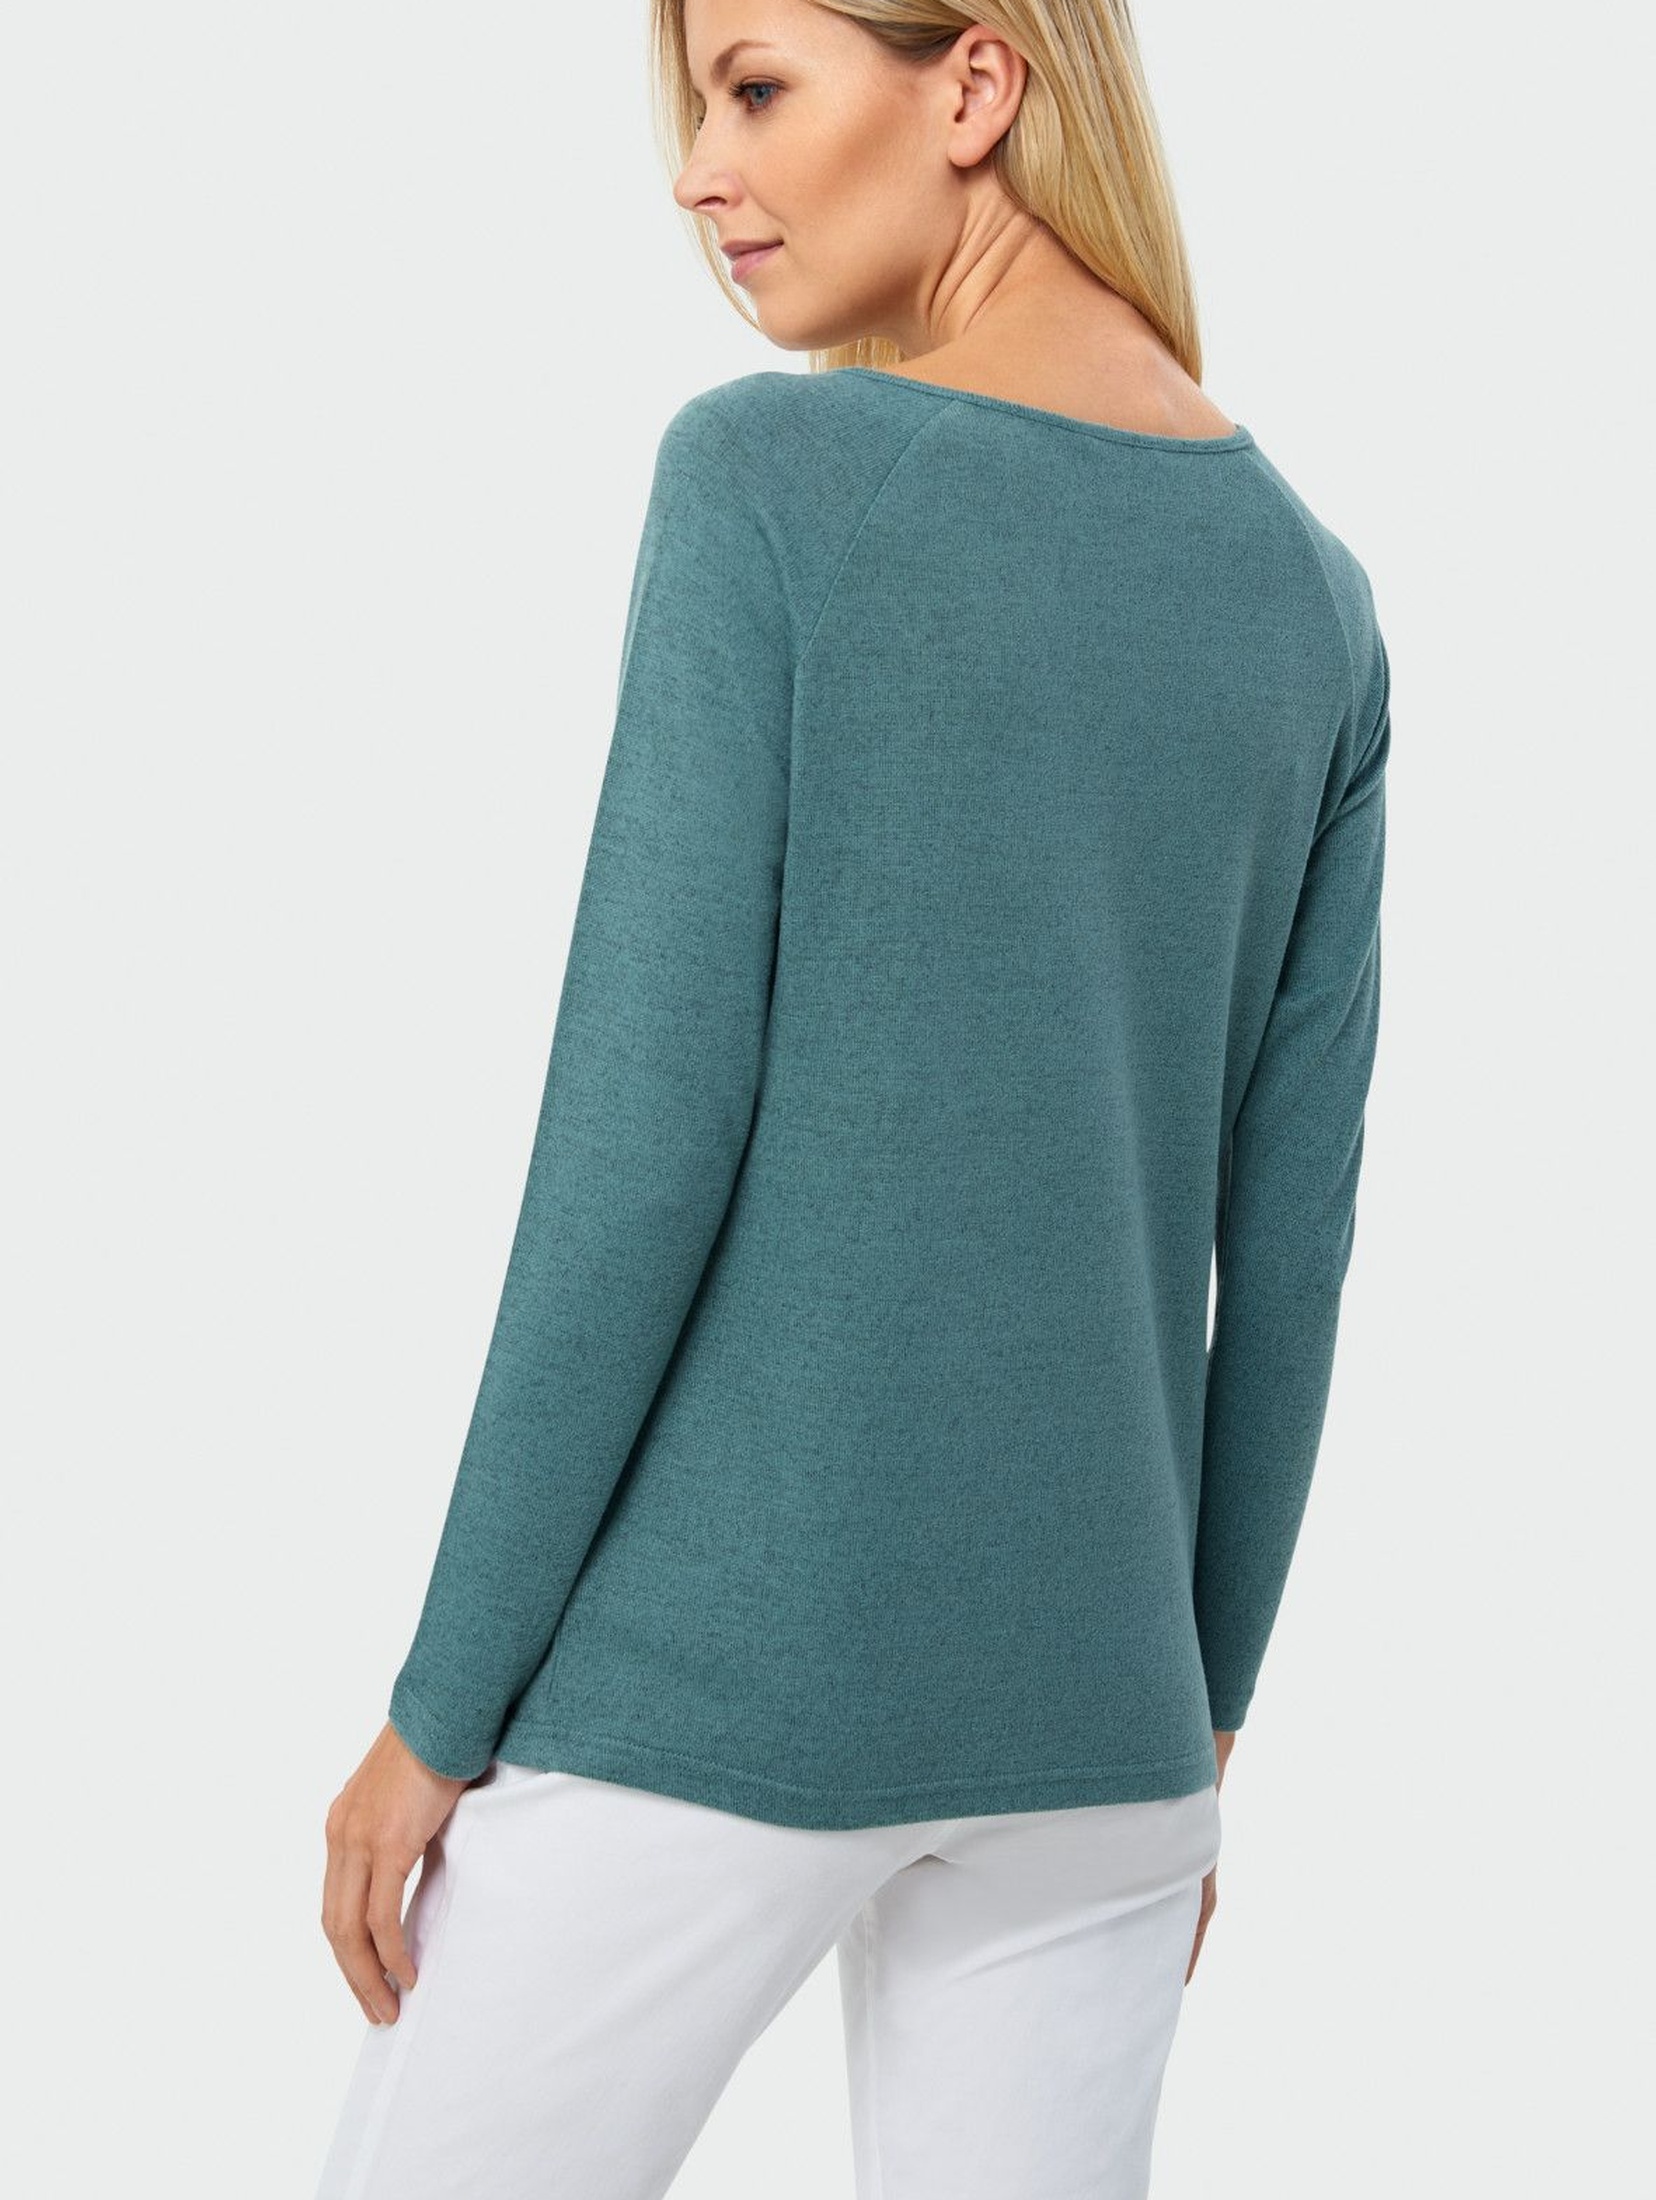 Dopasowany sweter damski w kolorze morskim z ozdobnymi wycięciami